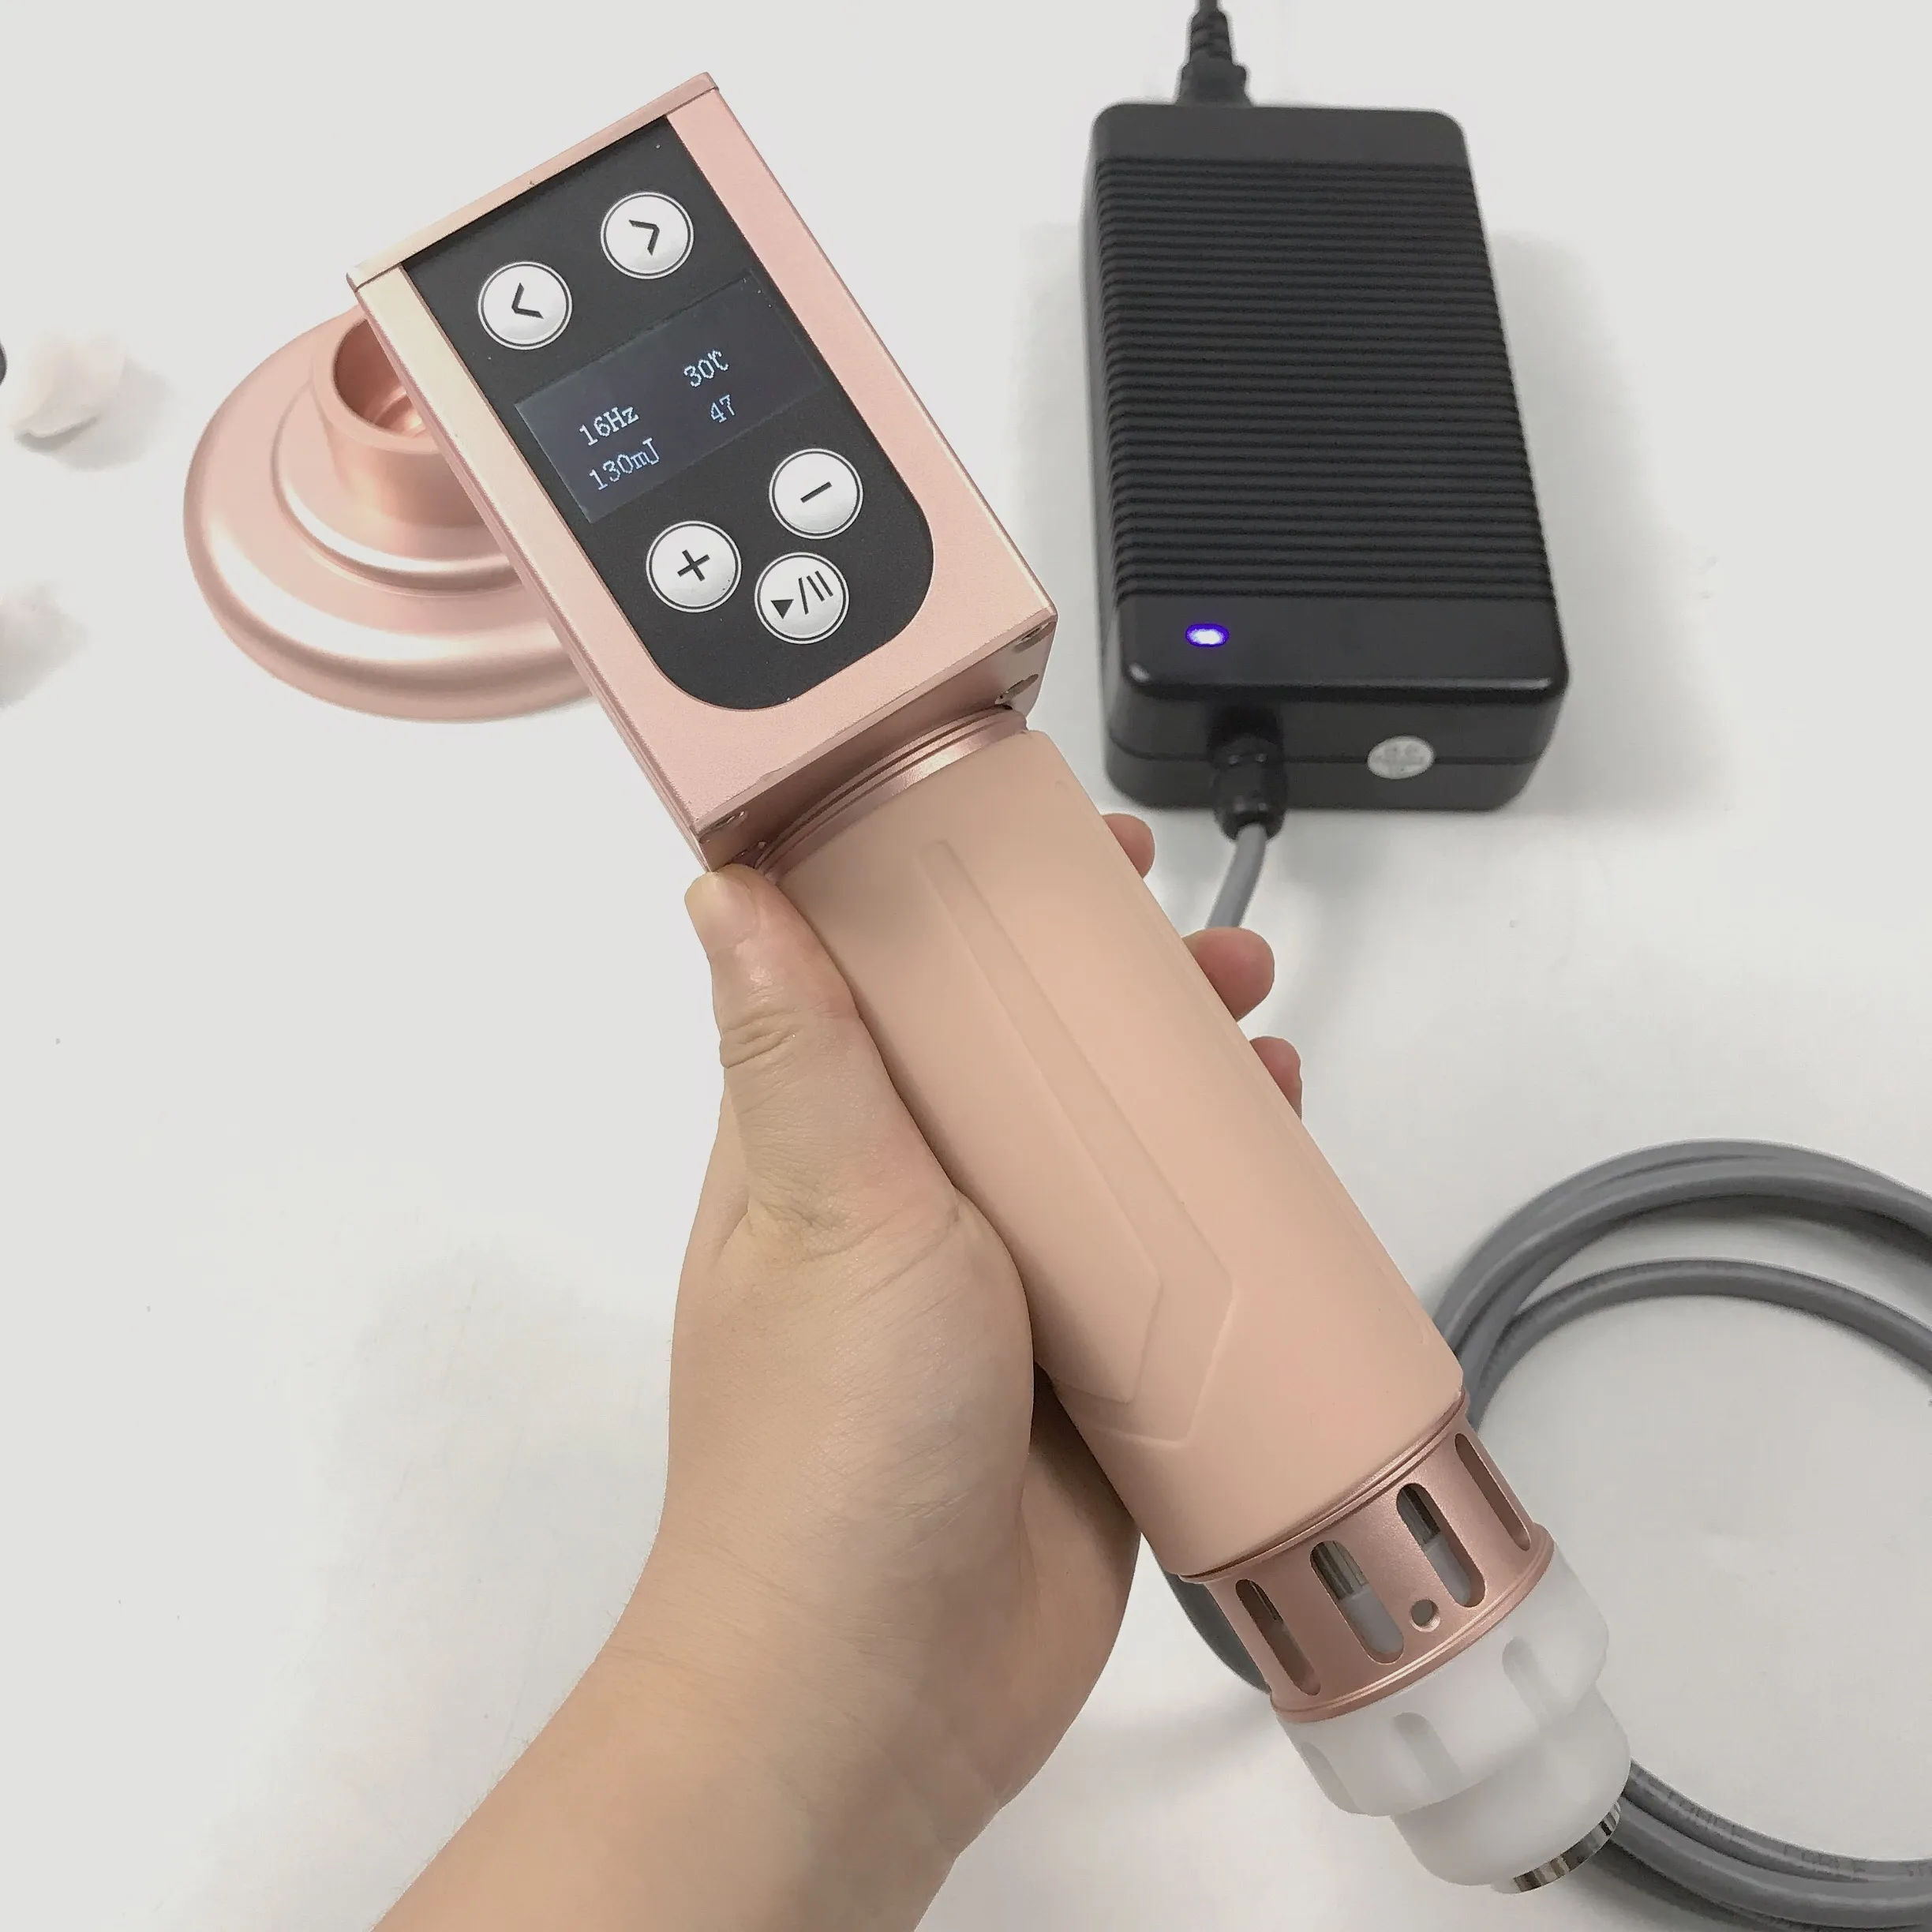 Handheld Shockwave Dispositivo de Cuidados de Saúde Cuidados de Saúde Therapy Therapy Scockwaves Break Gordura Reduza Celulite Corpo Slimming 1-16Hz 210MJ Intensidade Início Uso